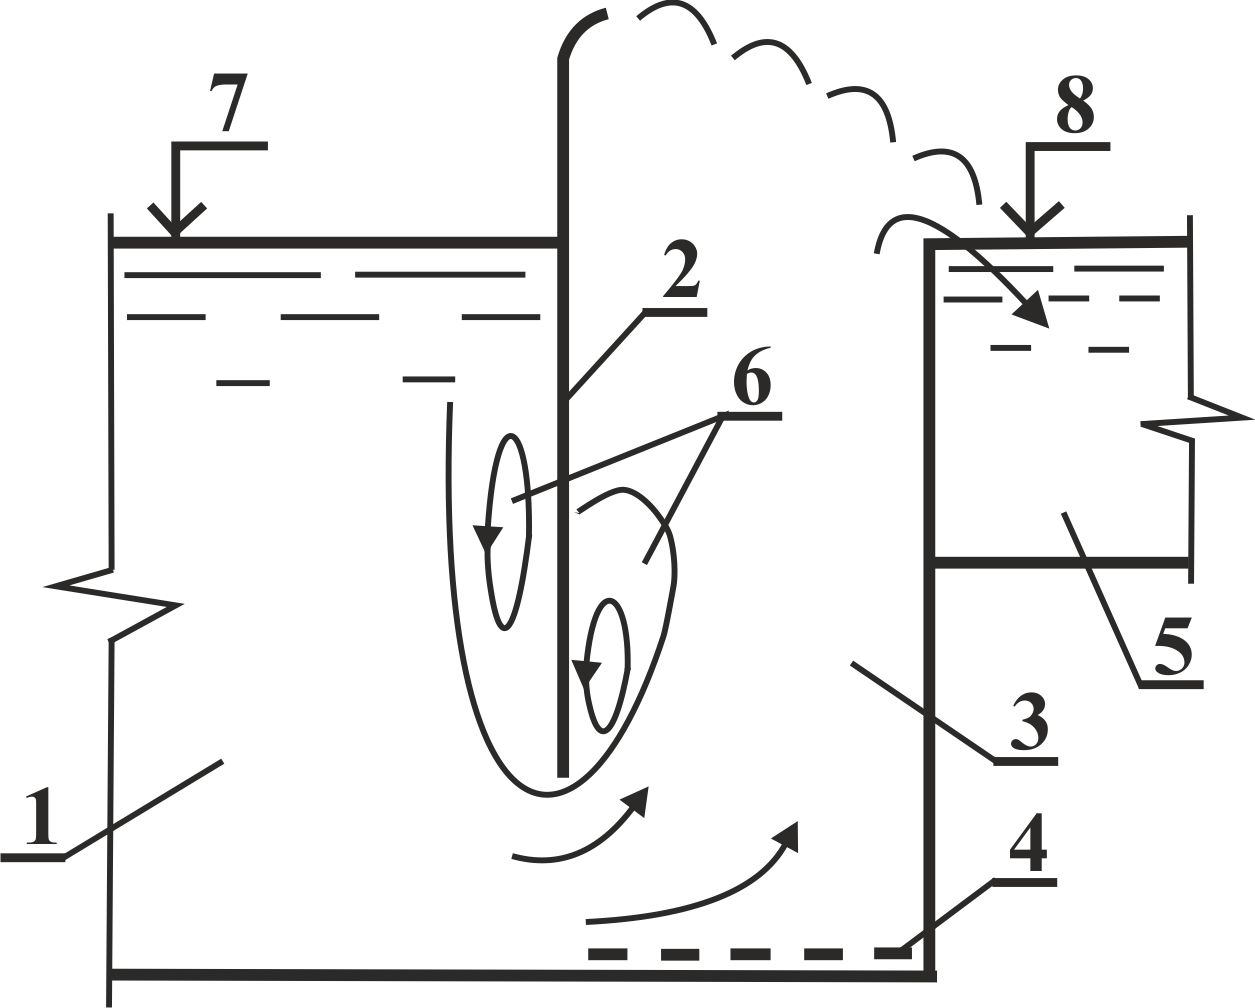 Вариант сопряжения эрлифтного подъемника с помощью диафрагмы: 1 - лоток приема; 2 - диафрагма; 3 - подъёмная шахт; 4 - форсунка; 5 - отводящий тракт; 6 - области завихрений; 7, 8 - верхний и нижний бьефы соответственно